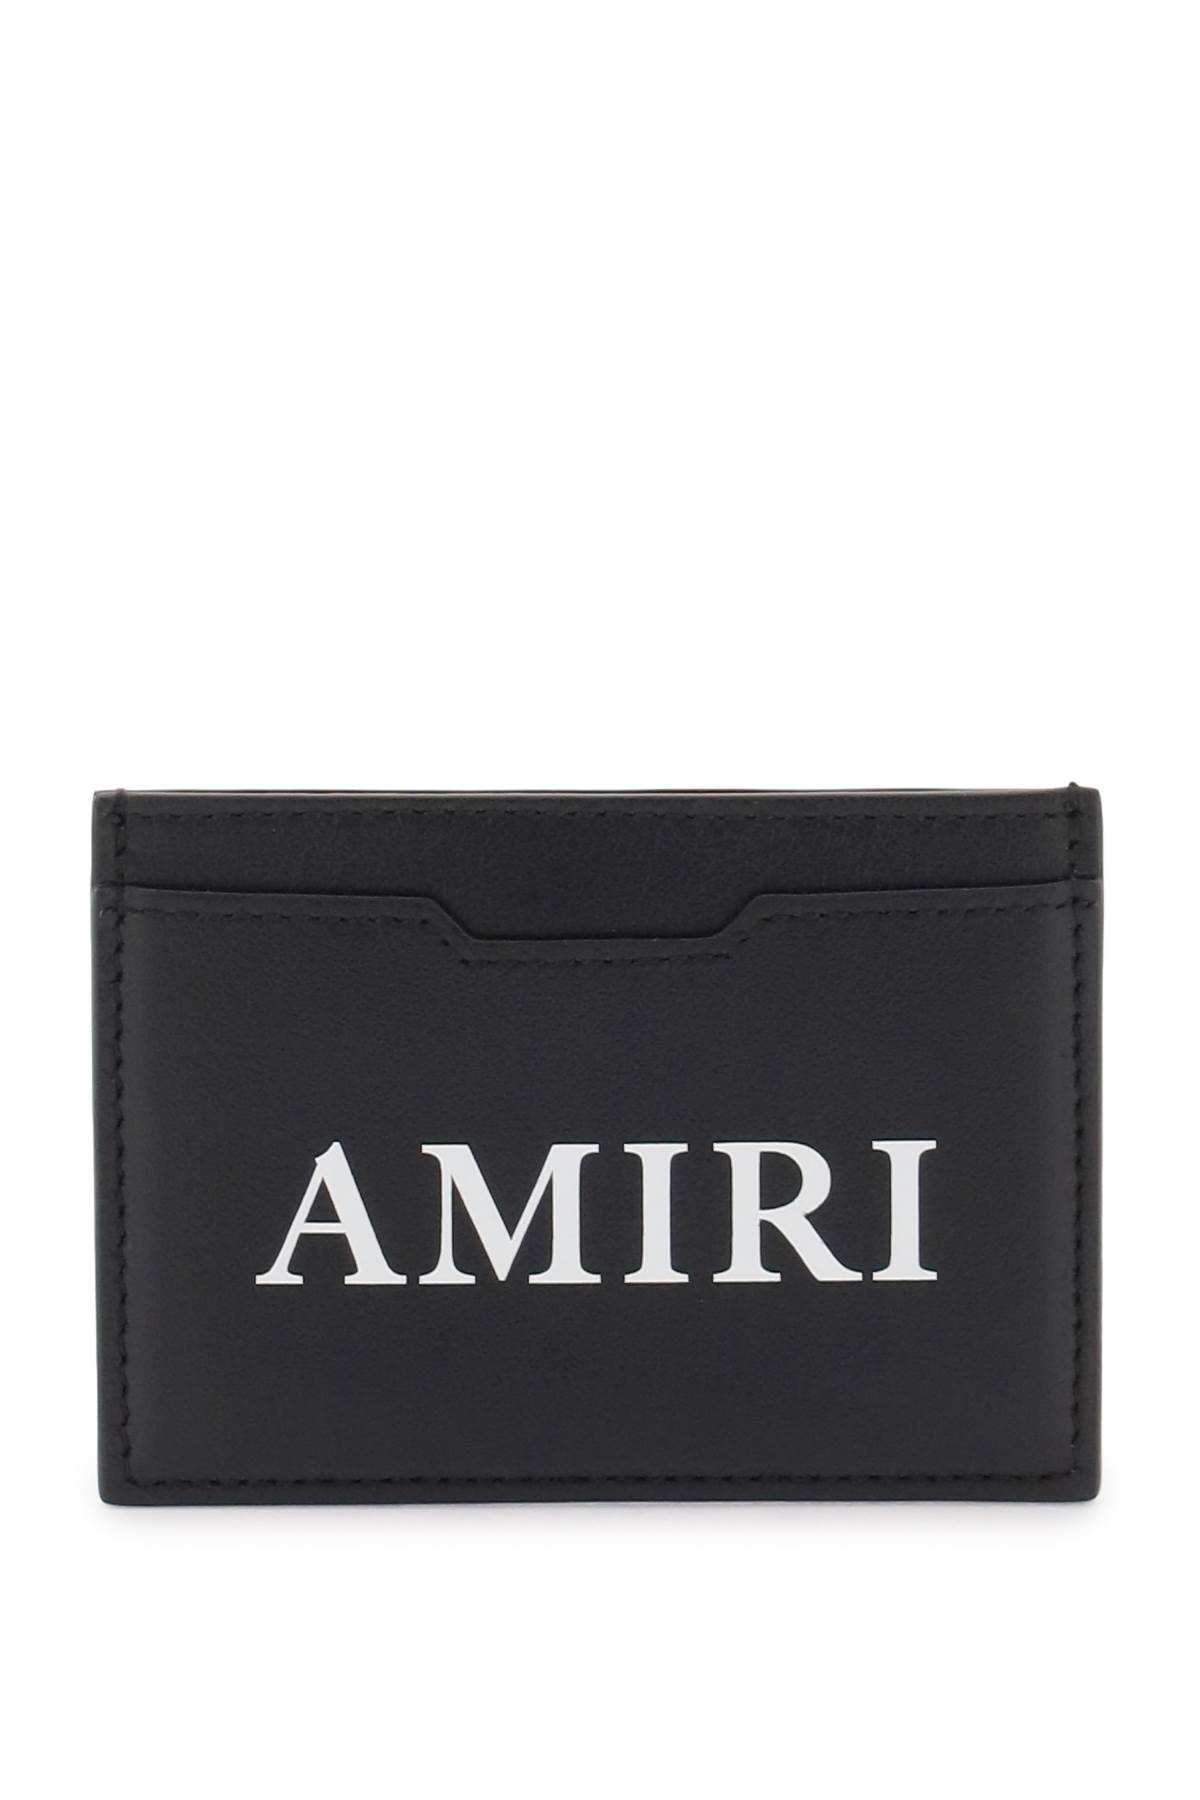 Amiri Logo Cardholder In Black